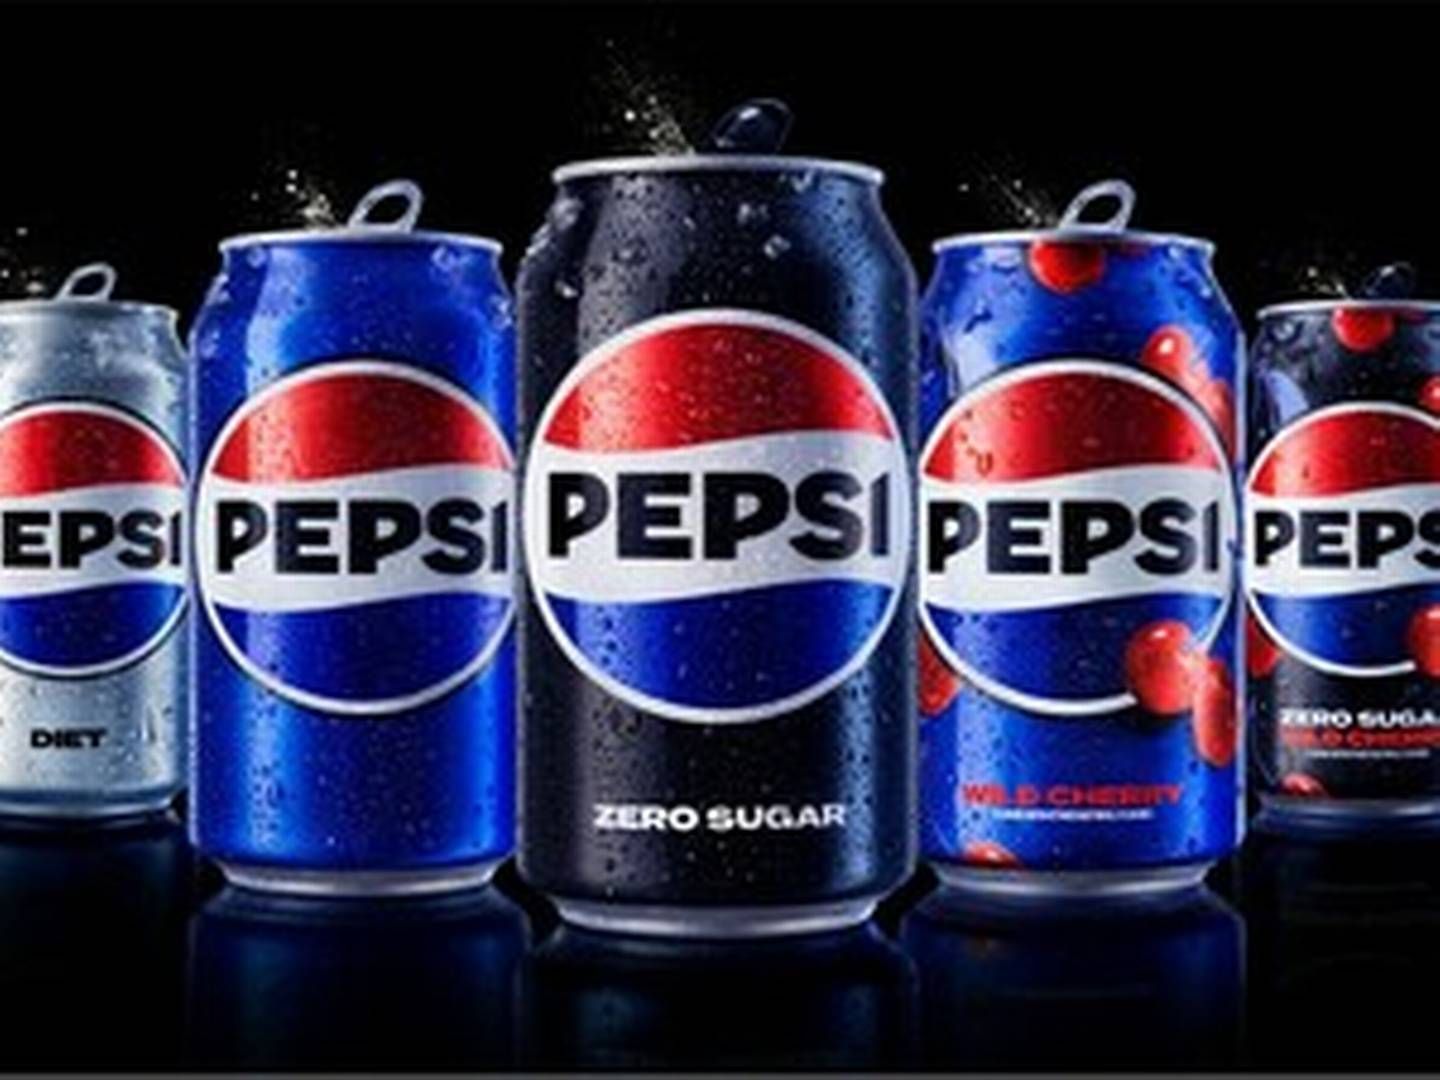 SAS boykotter nu endnu et produkt. | Foto: Pepsico Beverages North America Pr